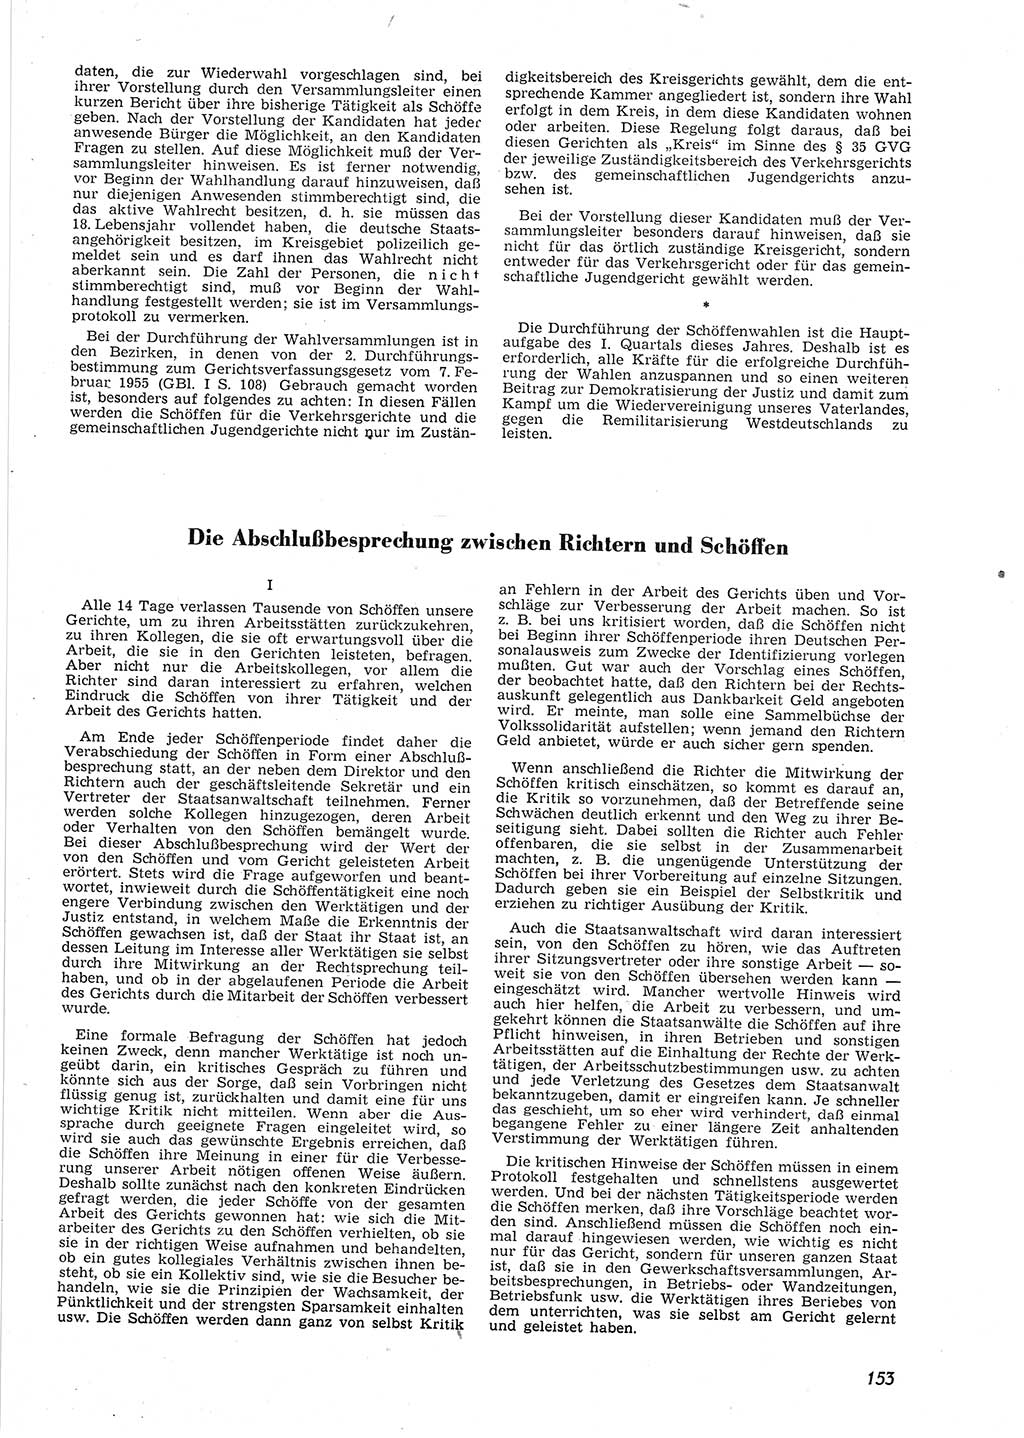 Neue Justiz (NJ), Zeitschrift für Recht und Rechtswissenschaft [Deutsche Demokratische Republik (DDR)], 9. Jahrgang 1955, Seite 153 (NJ DDR 1955, S. 153)